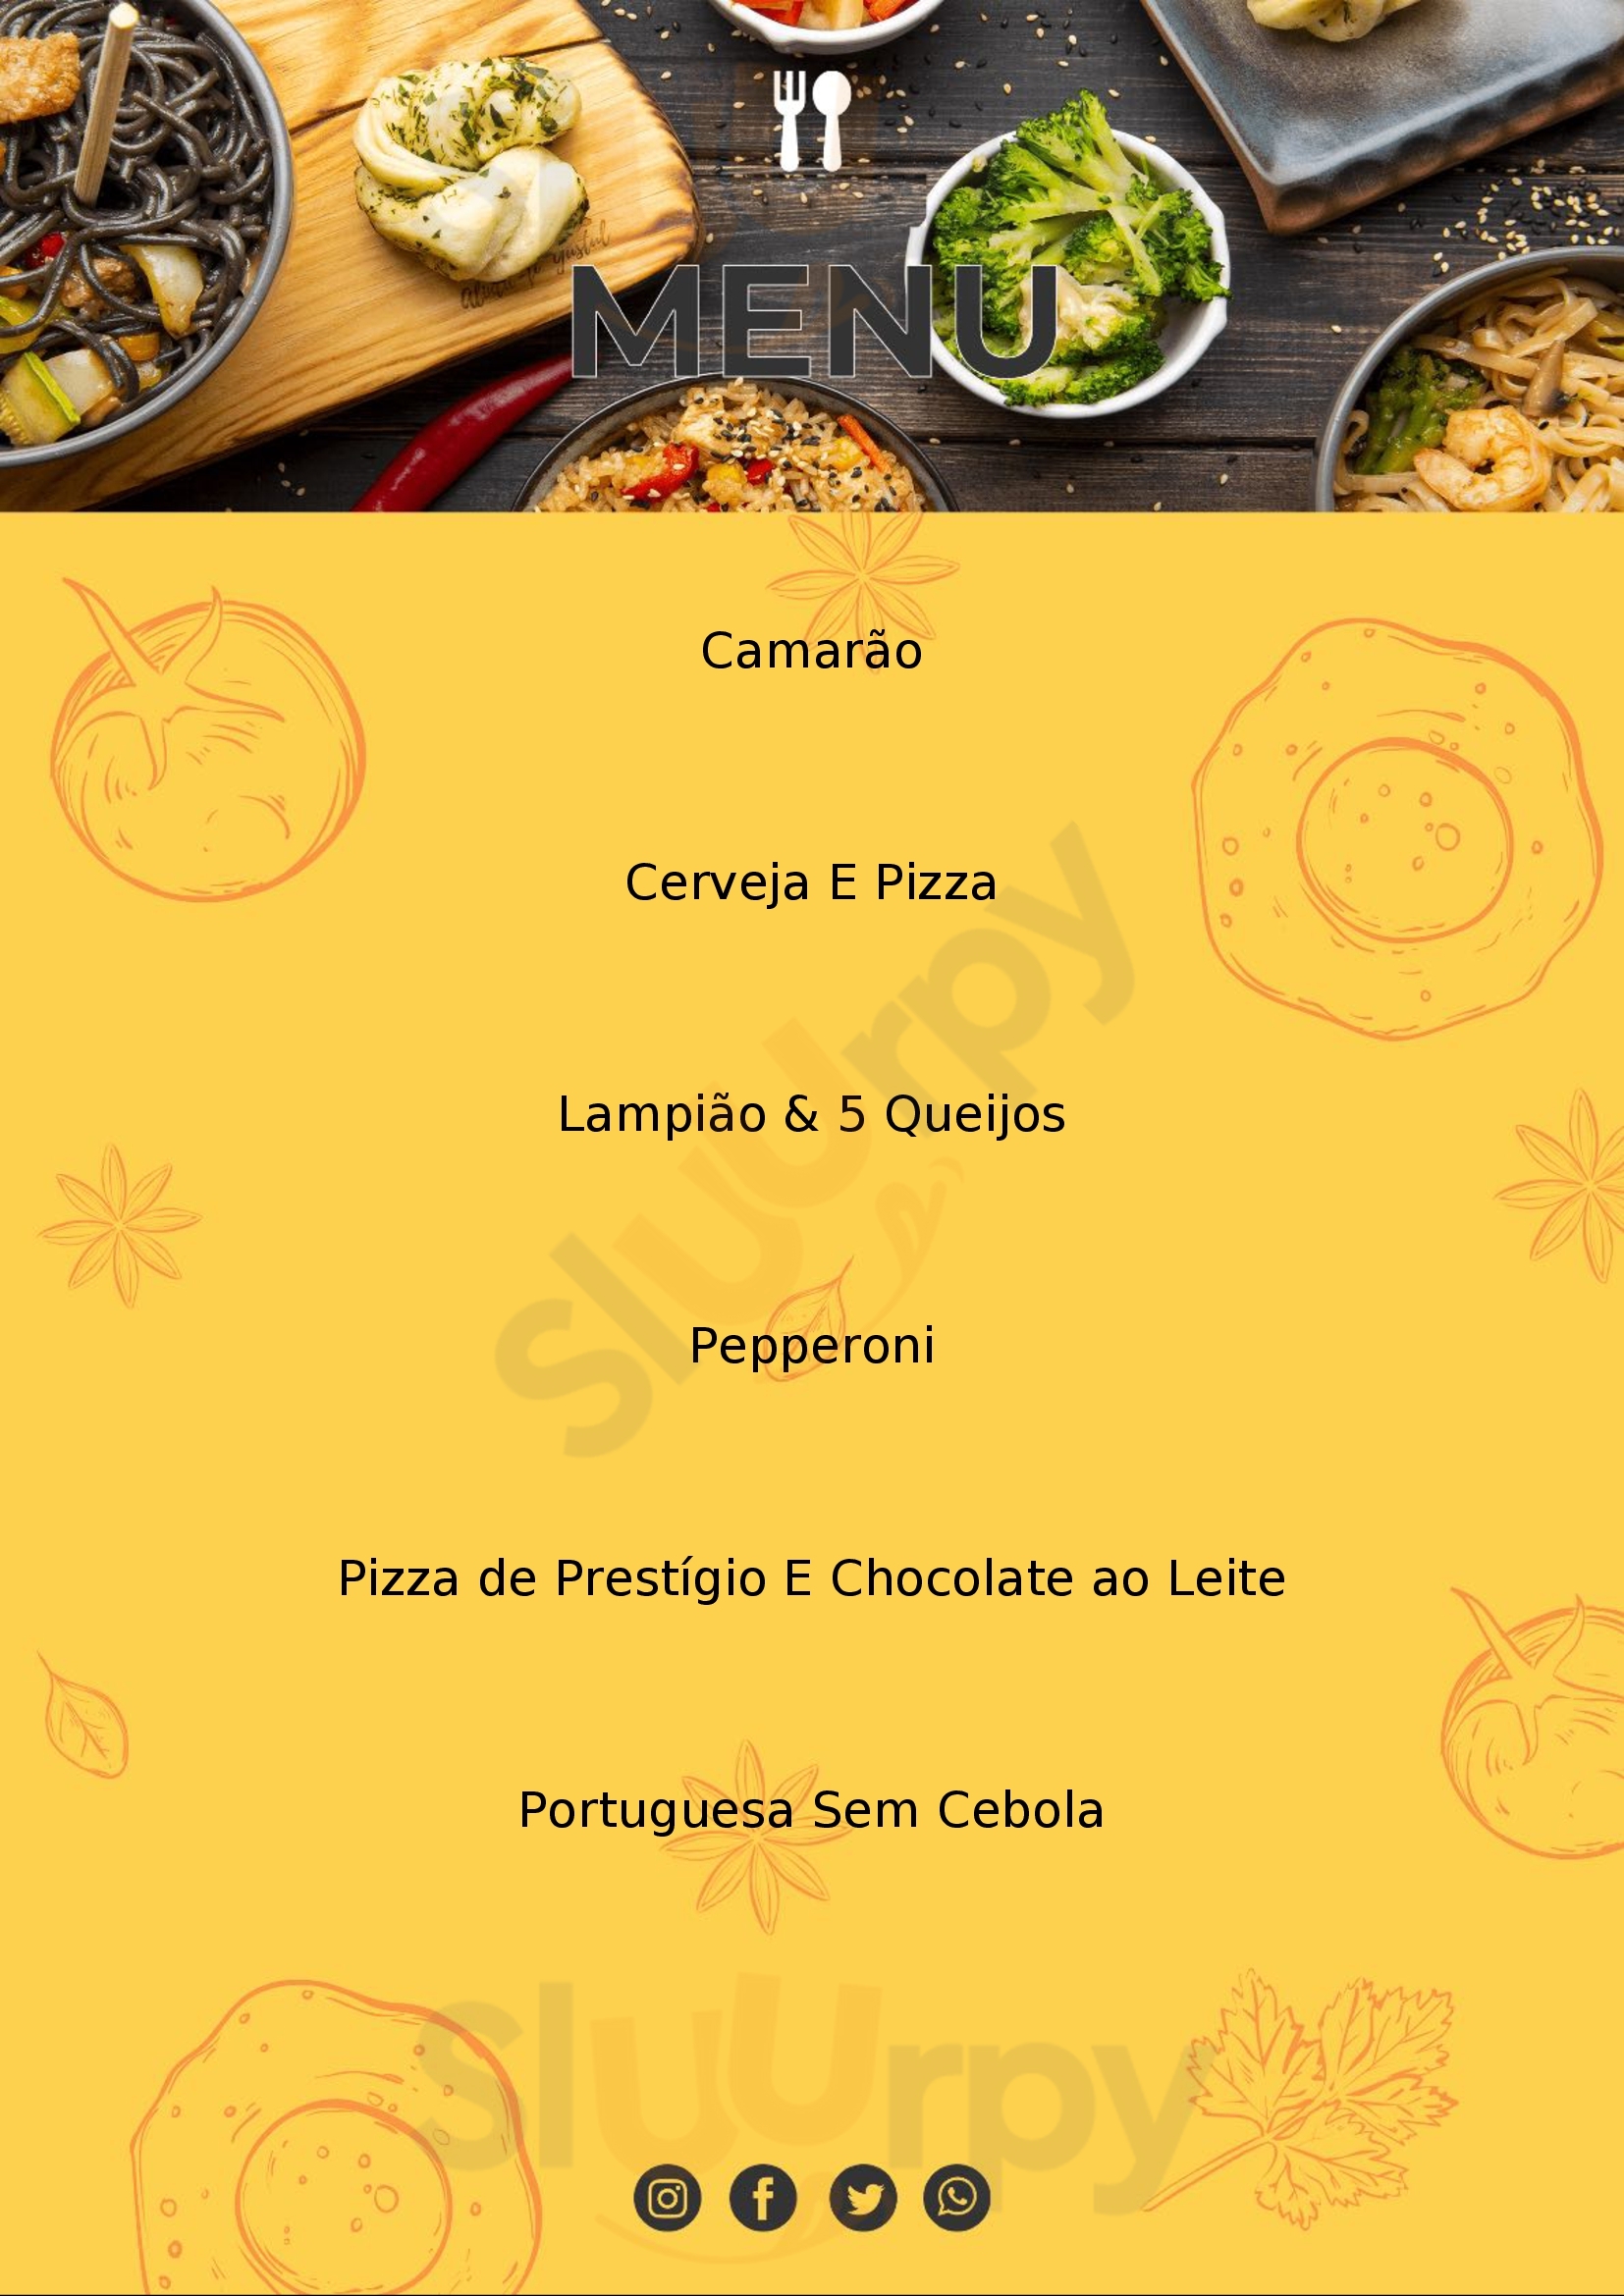 Pizza Nova Premium Luís Eduardo Magalhães Menu - 1